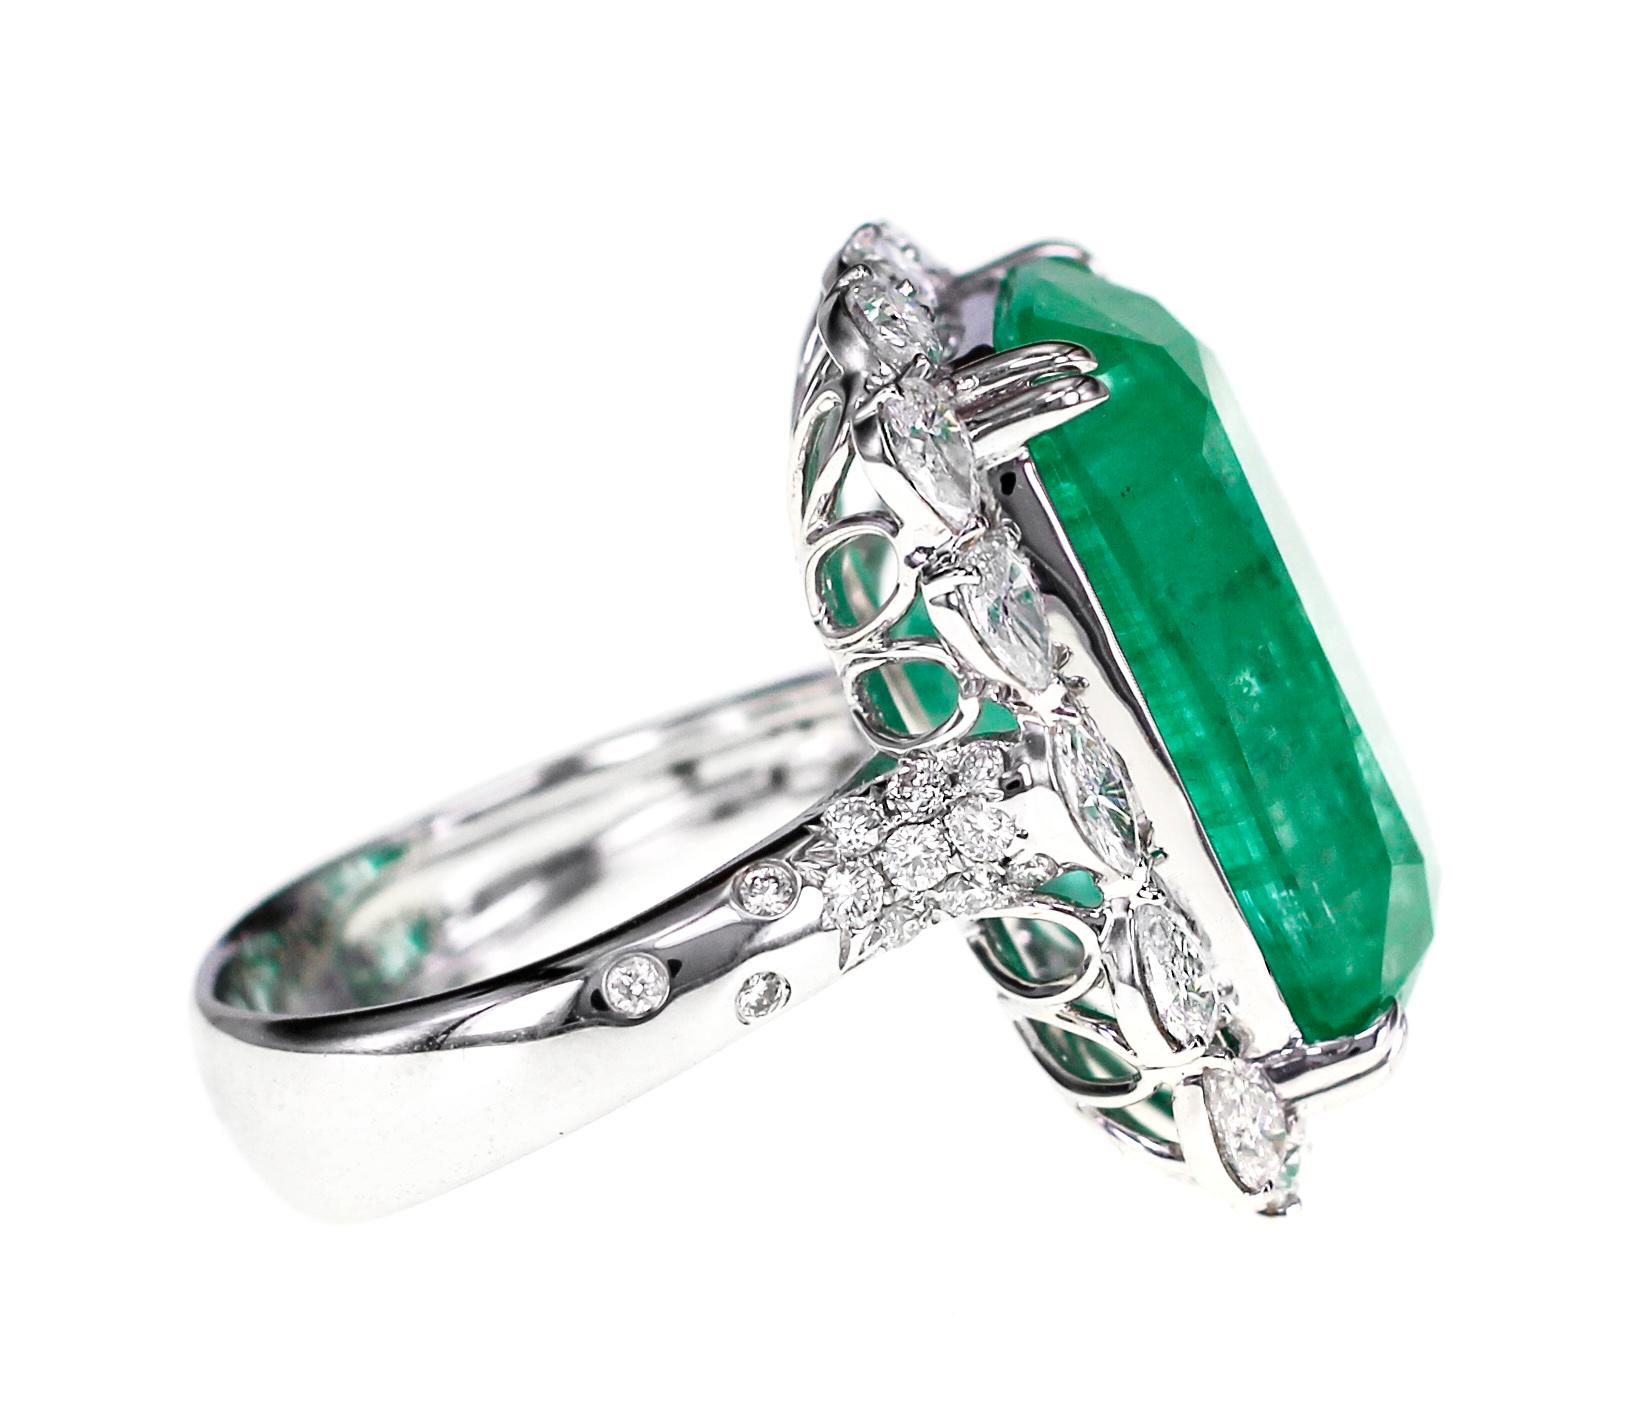 17 carat emerald